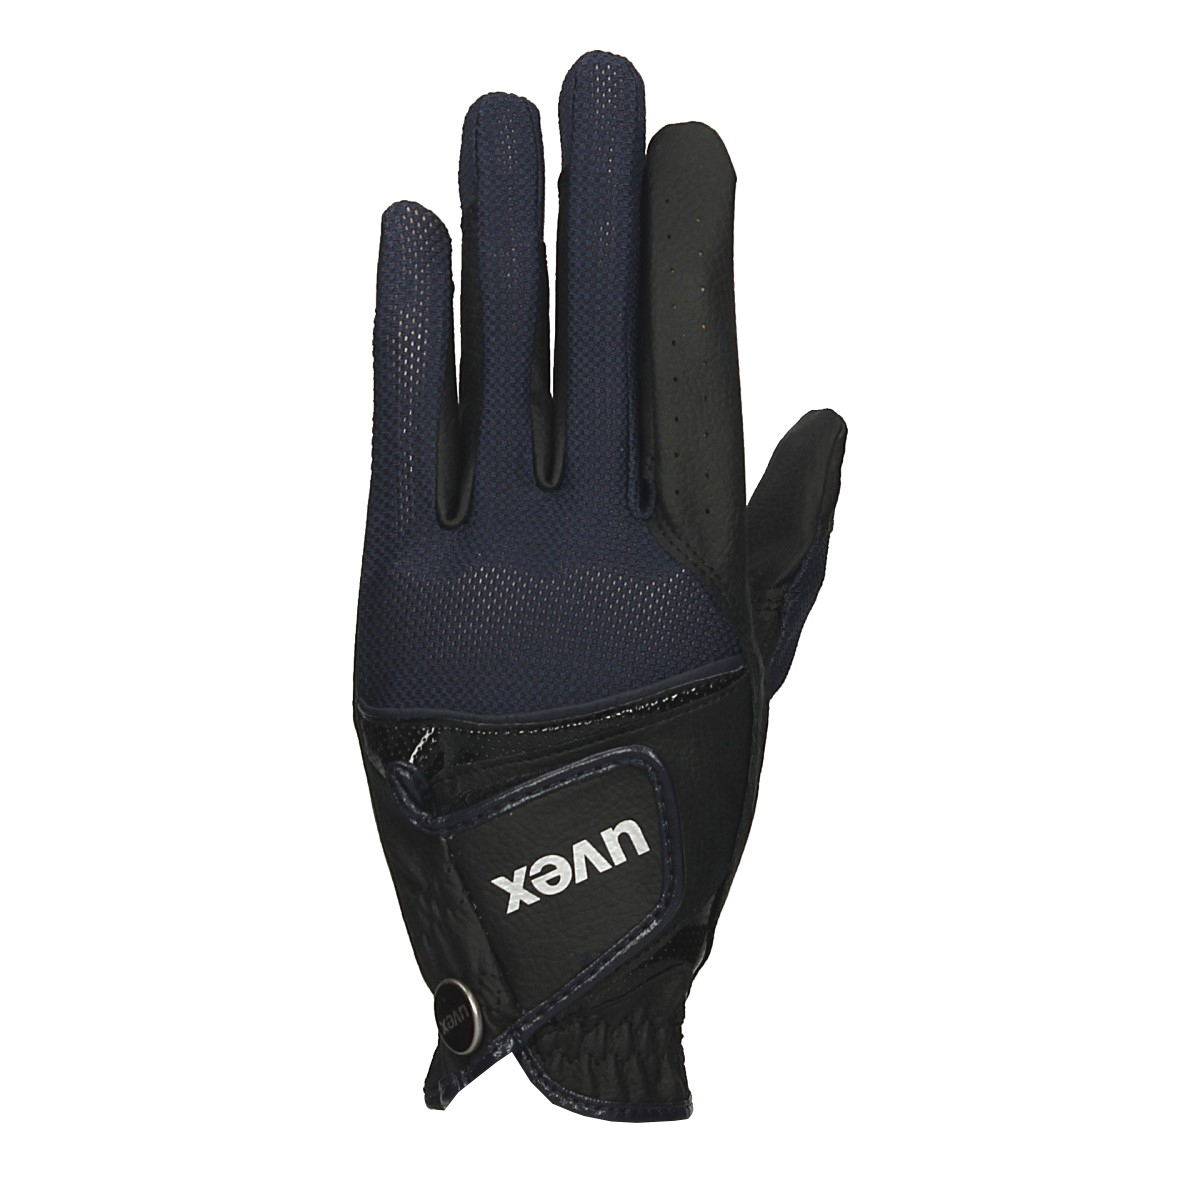 Handschoenen Uvex Sumair, 8?in black/blue